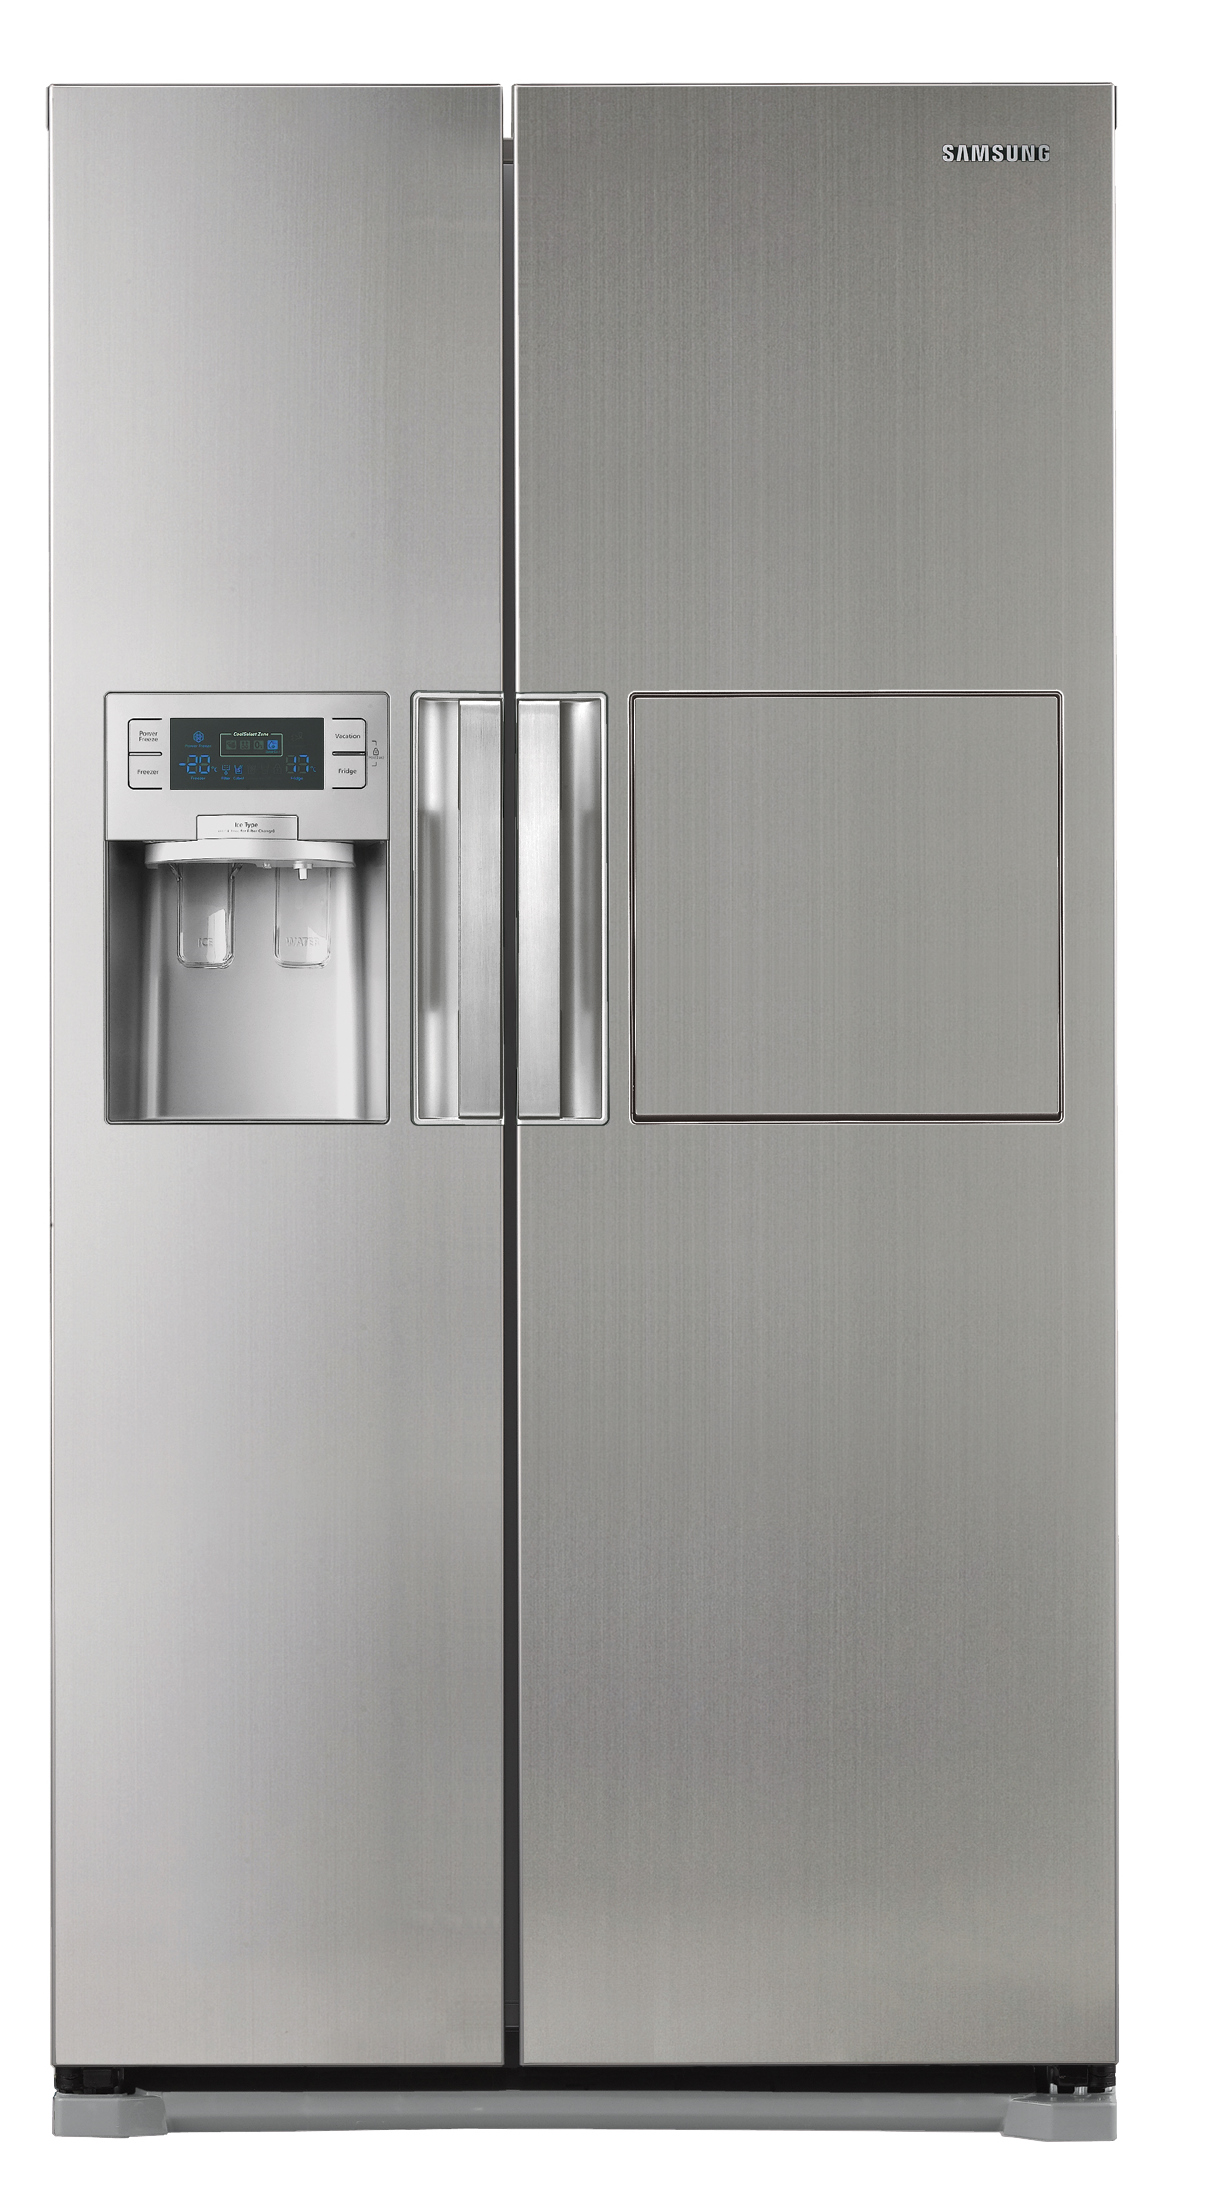 Продам большой, 2-вух дверный холодильник Samsung SIDE-BY-SIDE